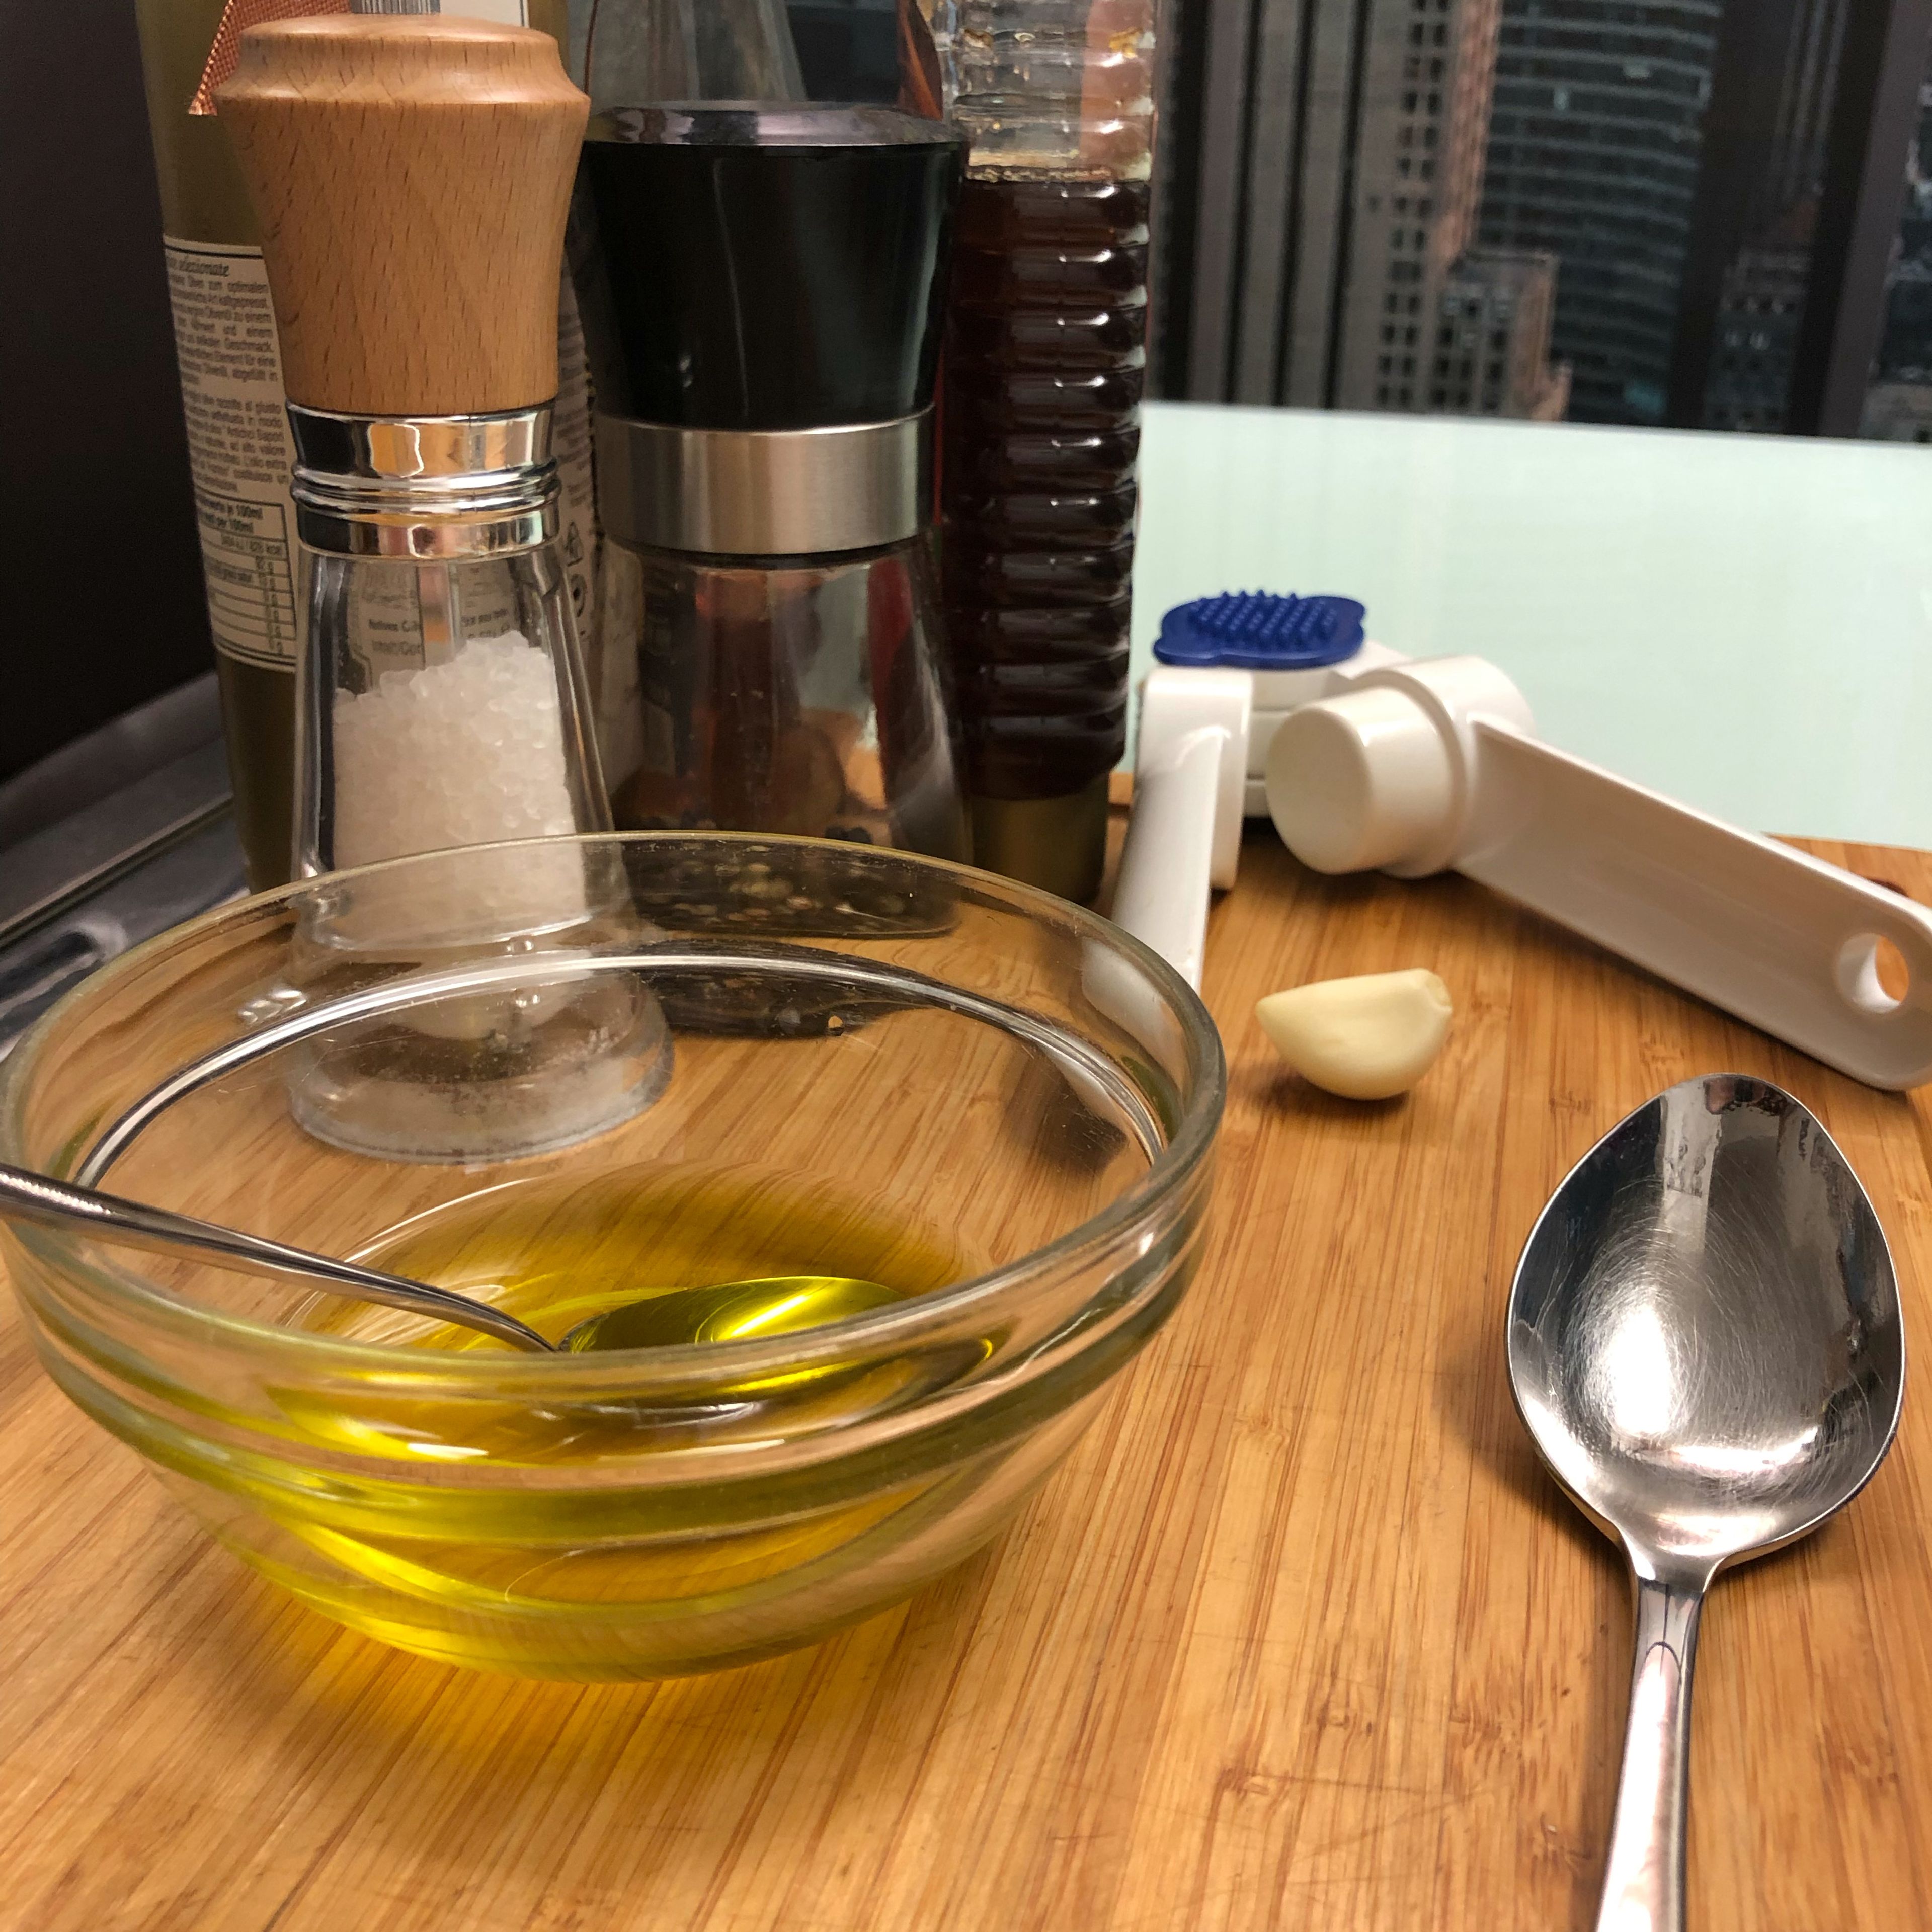 Für das Dressing die Knoblauchzehe pressen und mit Olivenöl, weißem Balsamico, Honig, Salz und Pfeffer mischen.